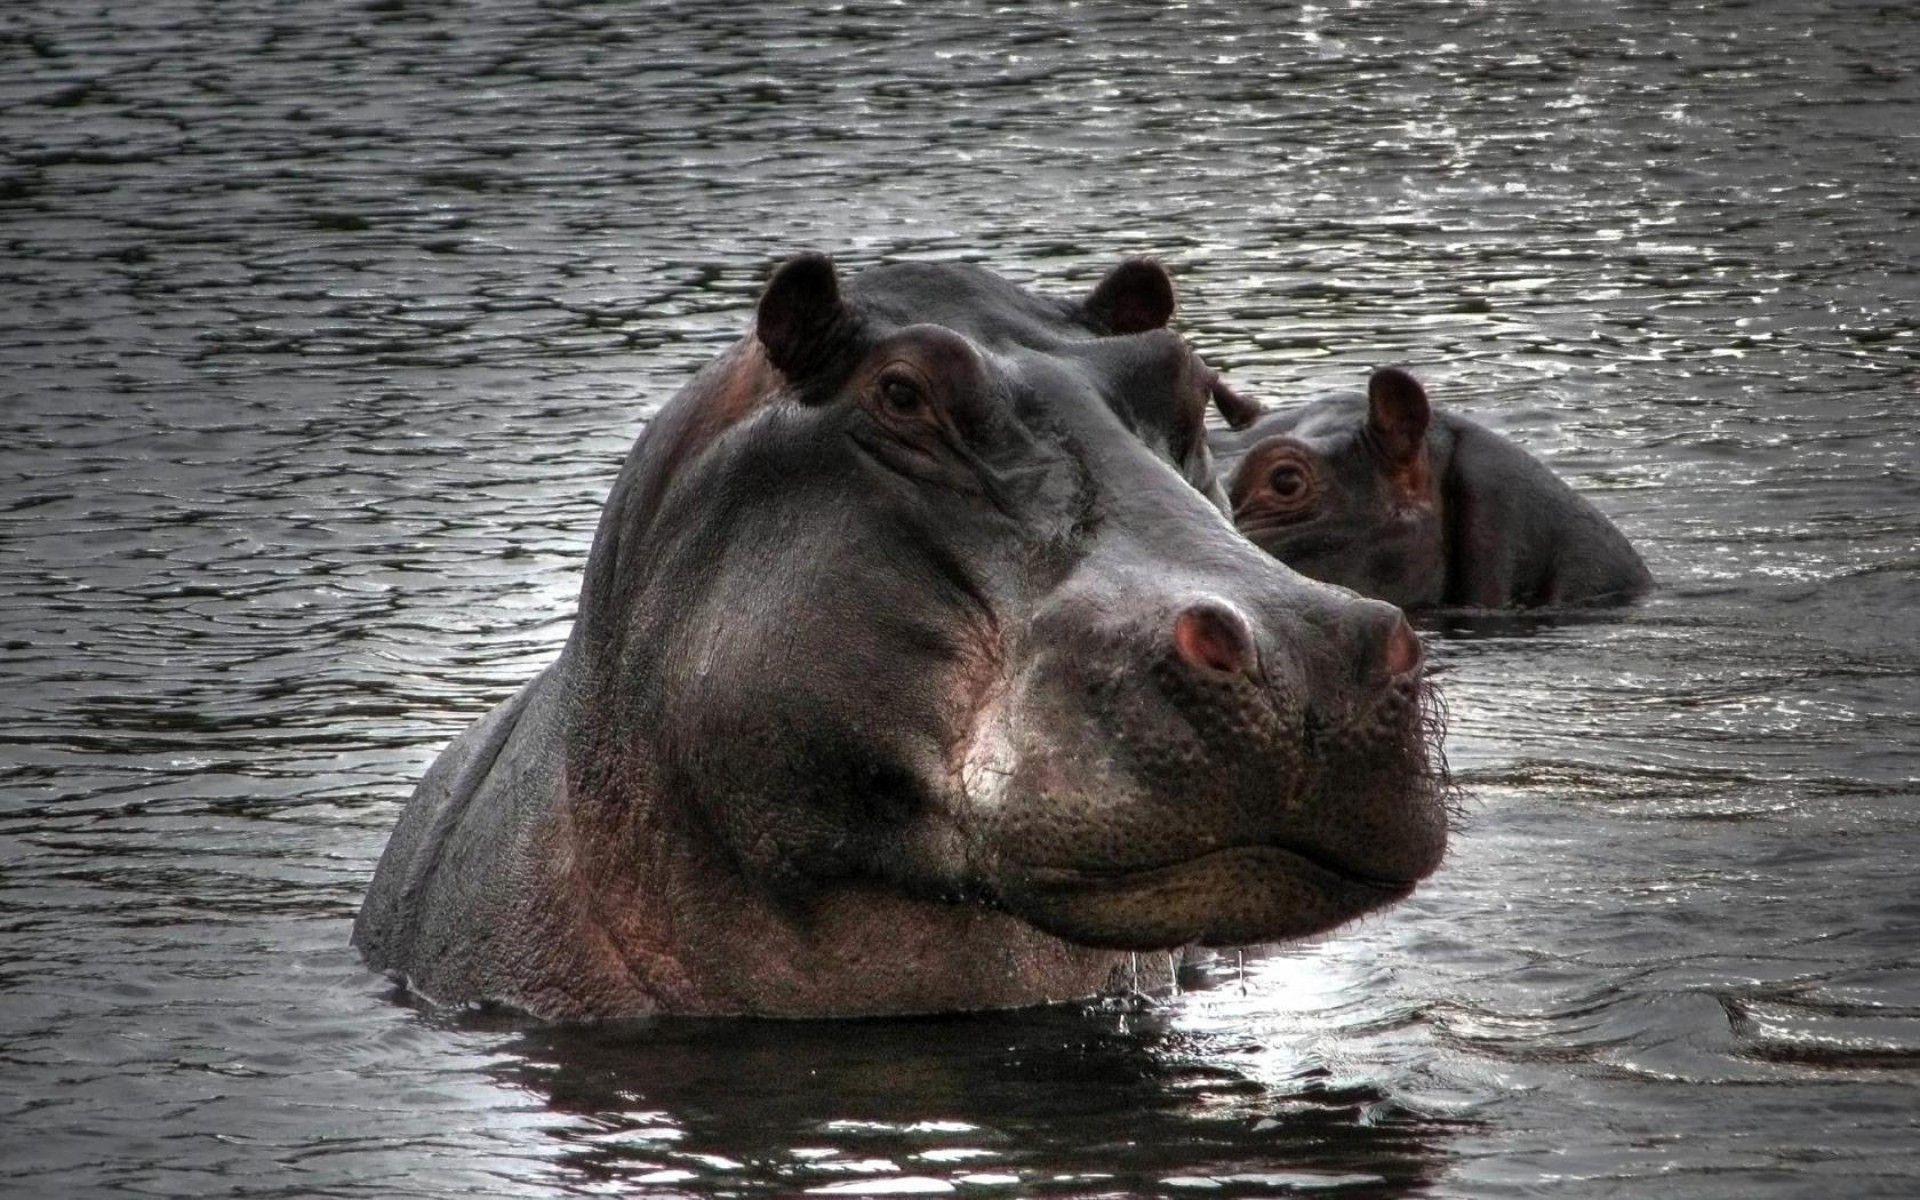 Hippopotamus Image. Sky HD Wallpaper. African animals, birds